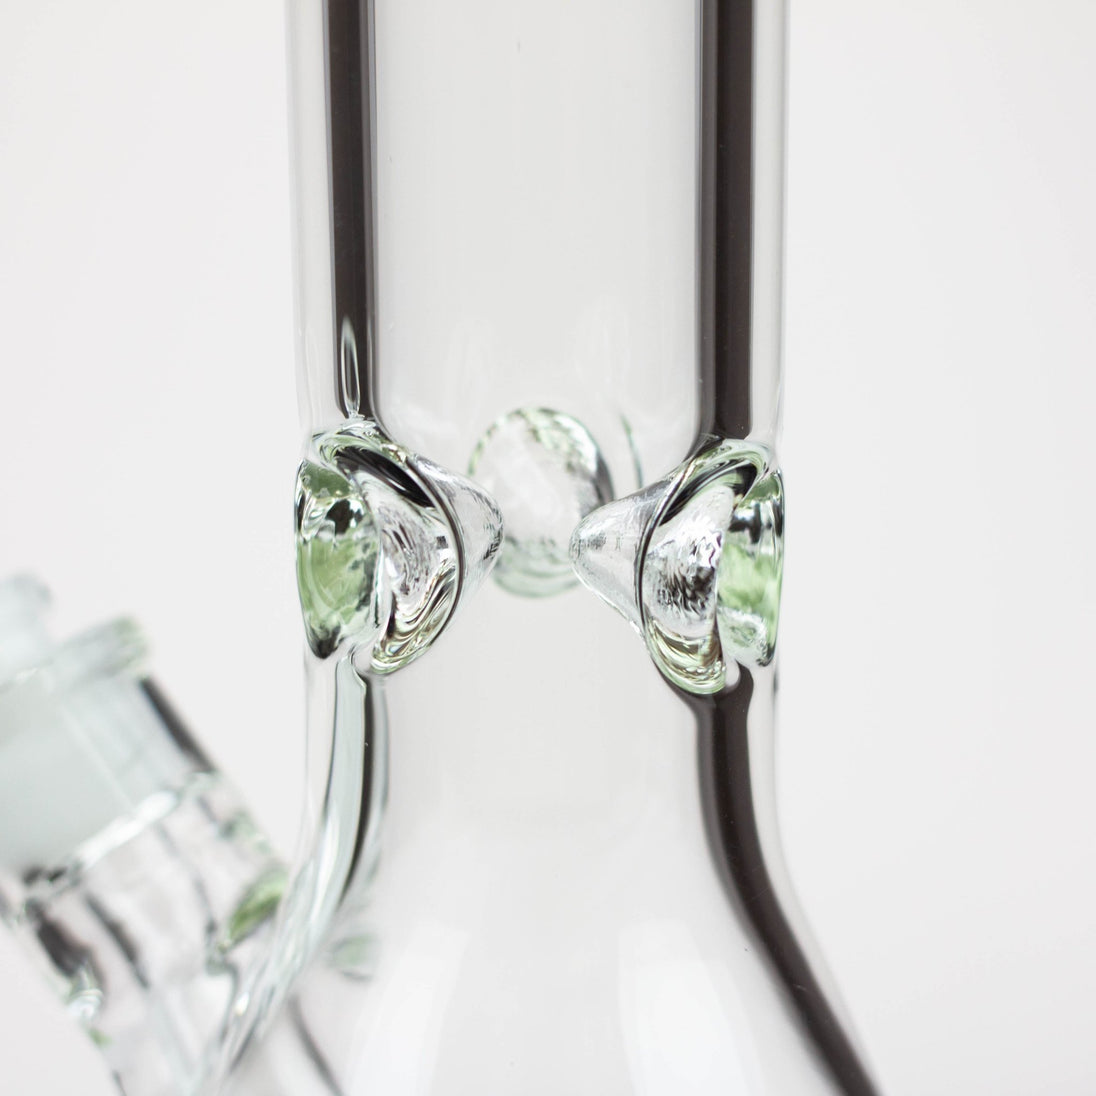 Classic 13.5" 7mm Beaker Glass Beaker Bong - Glasss Station